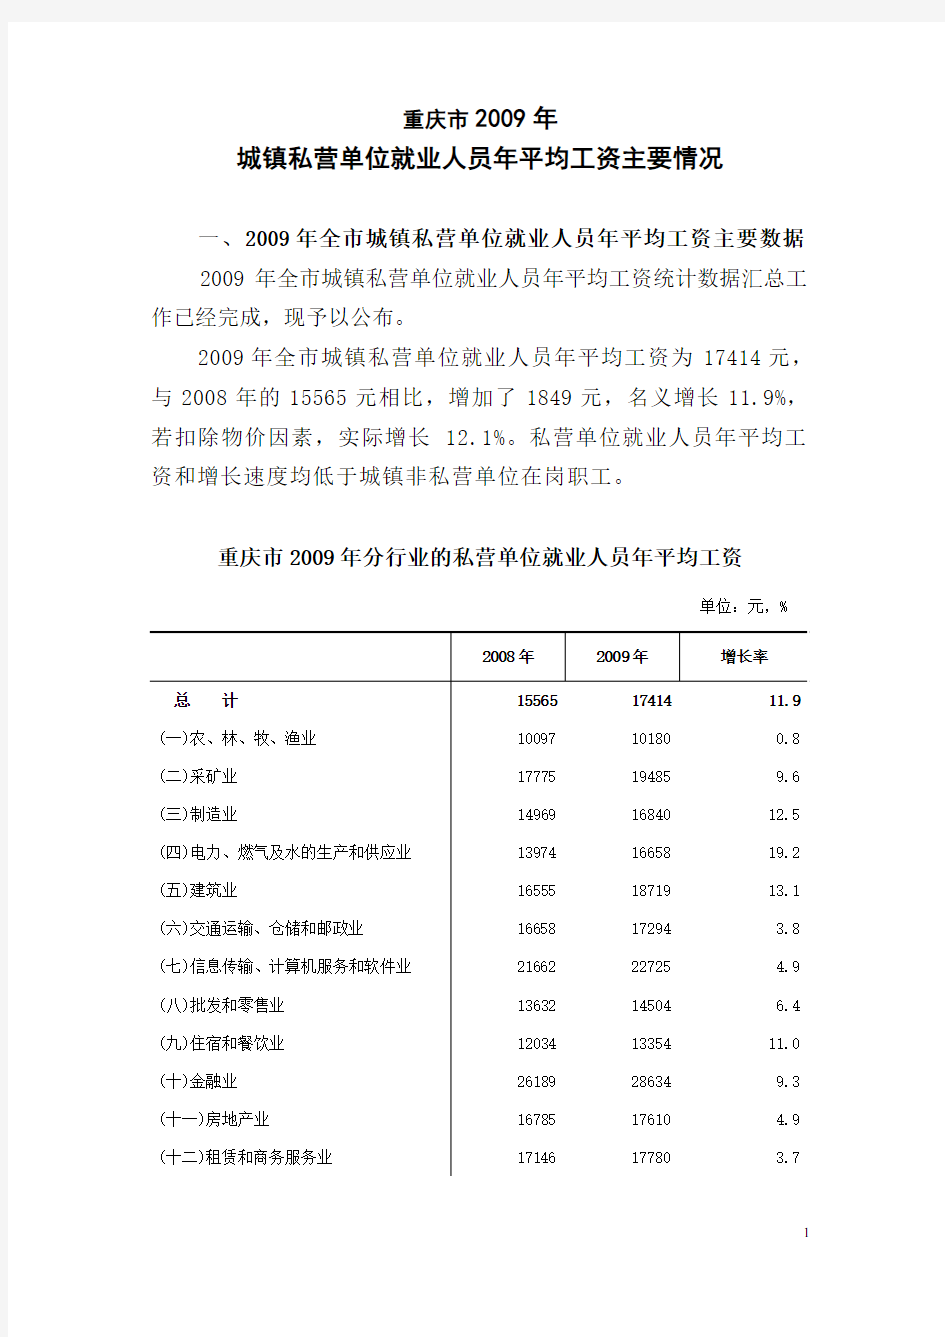 重庆市2009年城镇私营单位就业人员年平均工资主要情况